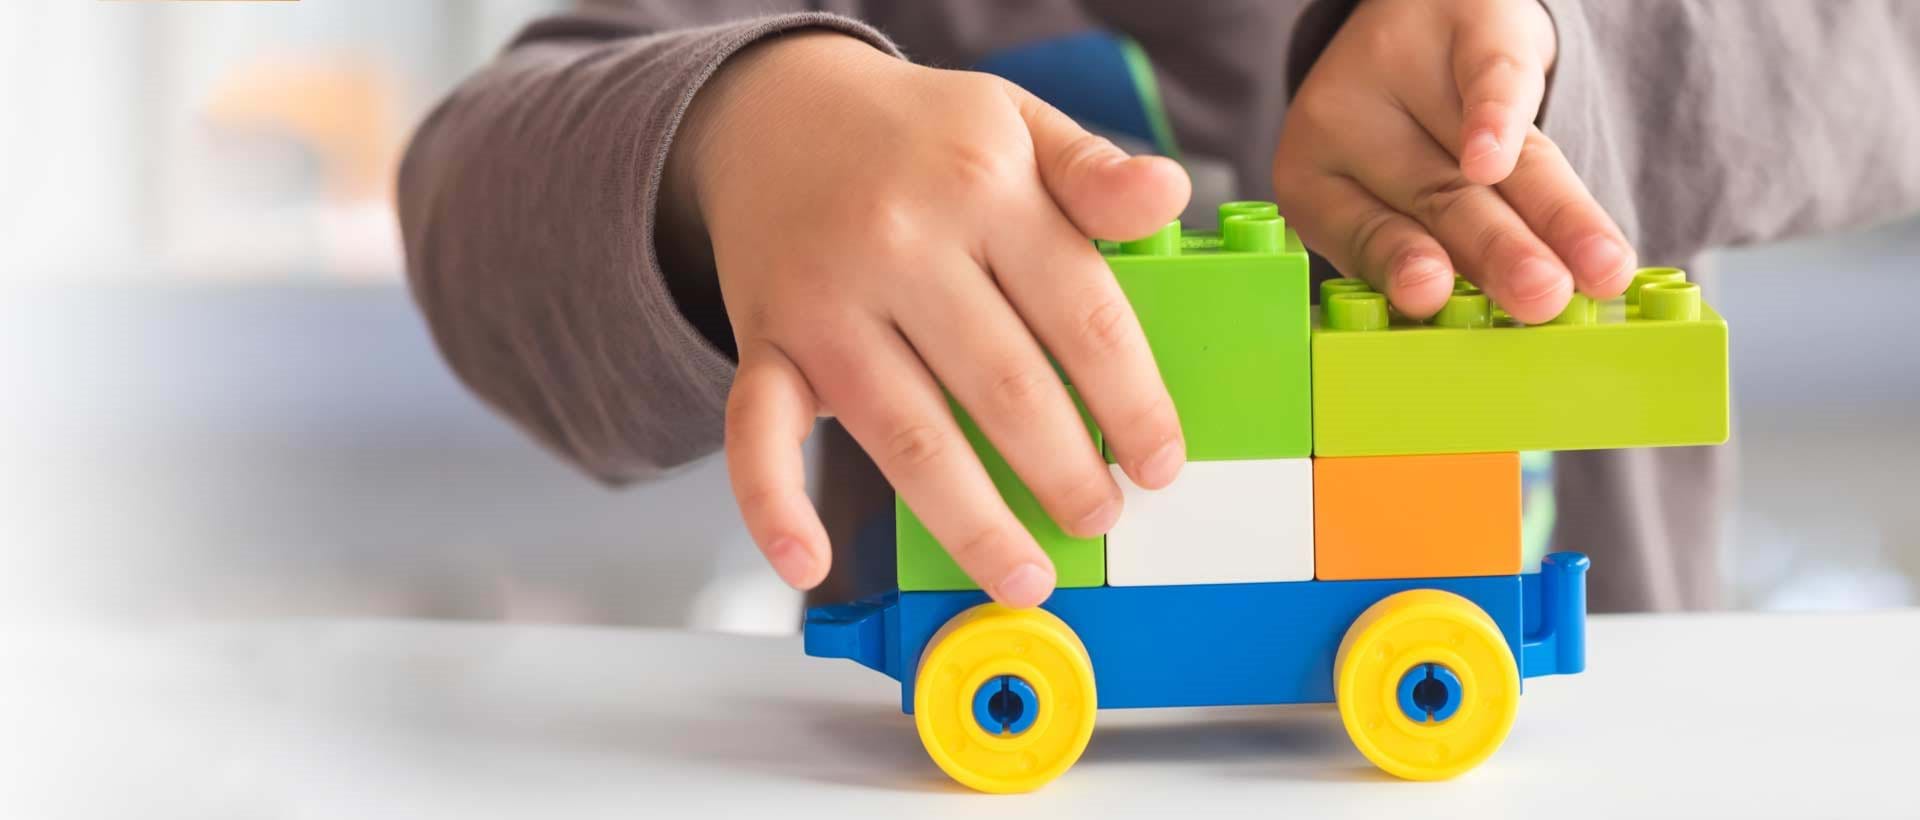 IUP - Individuell Utviklingsplan: Et barn som leker med legoklosser, symboliserer individuell utvikling og læring.